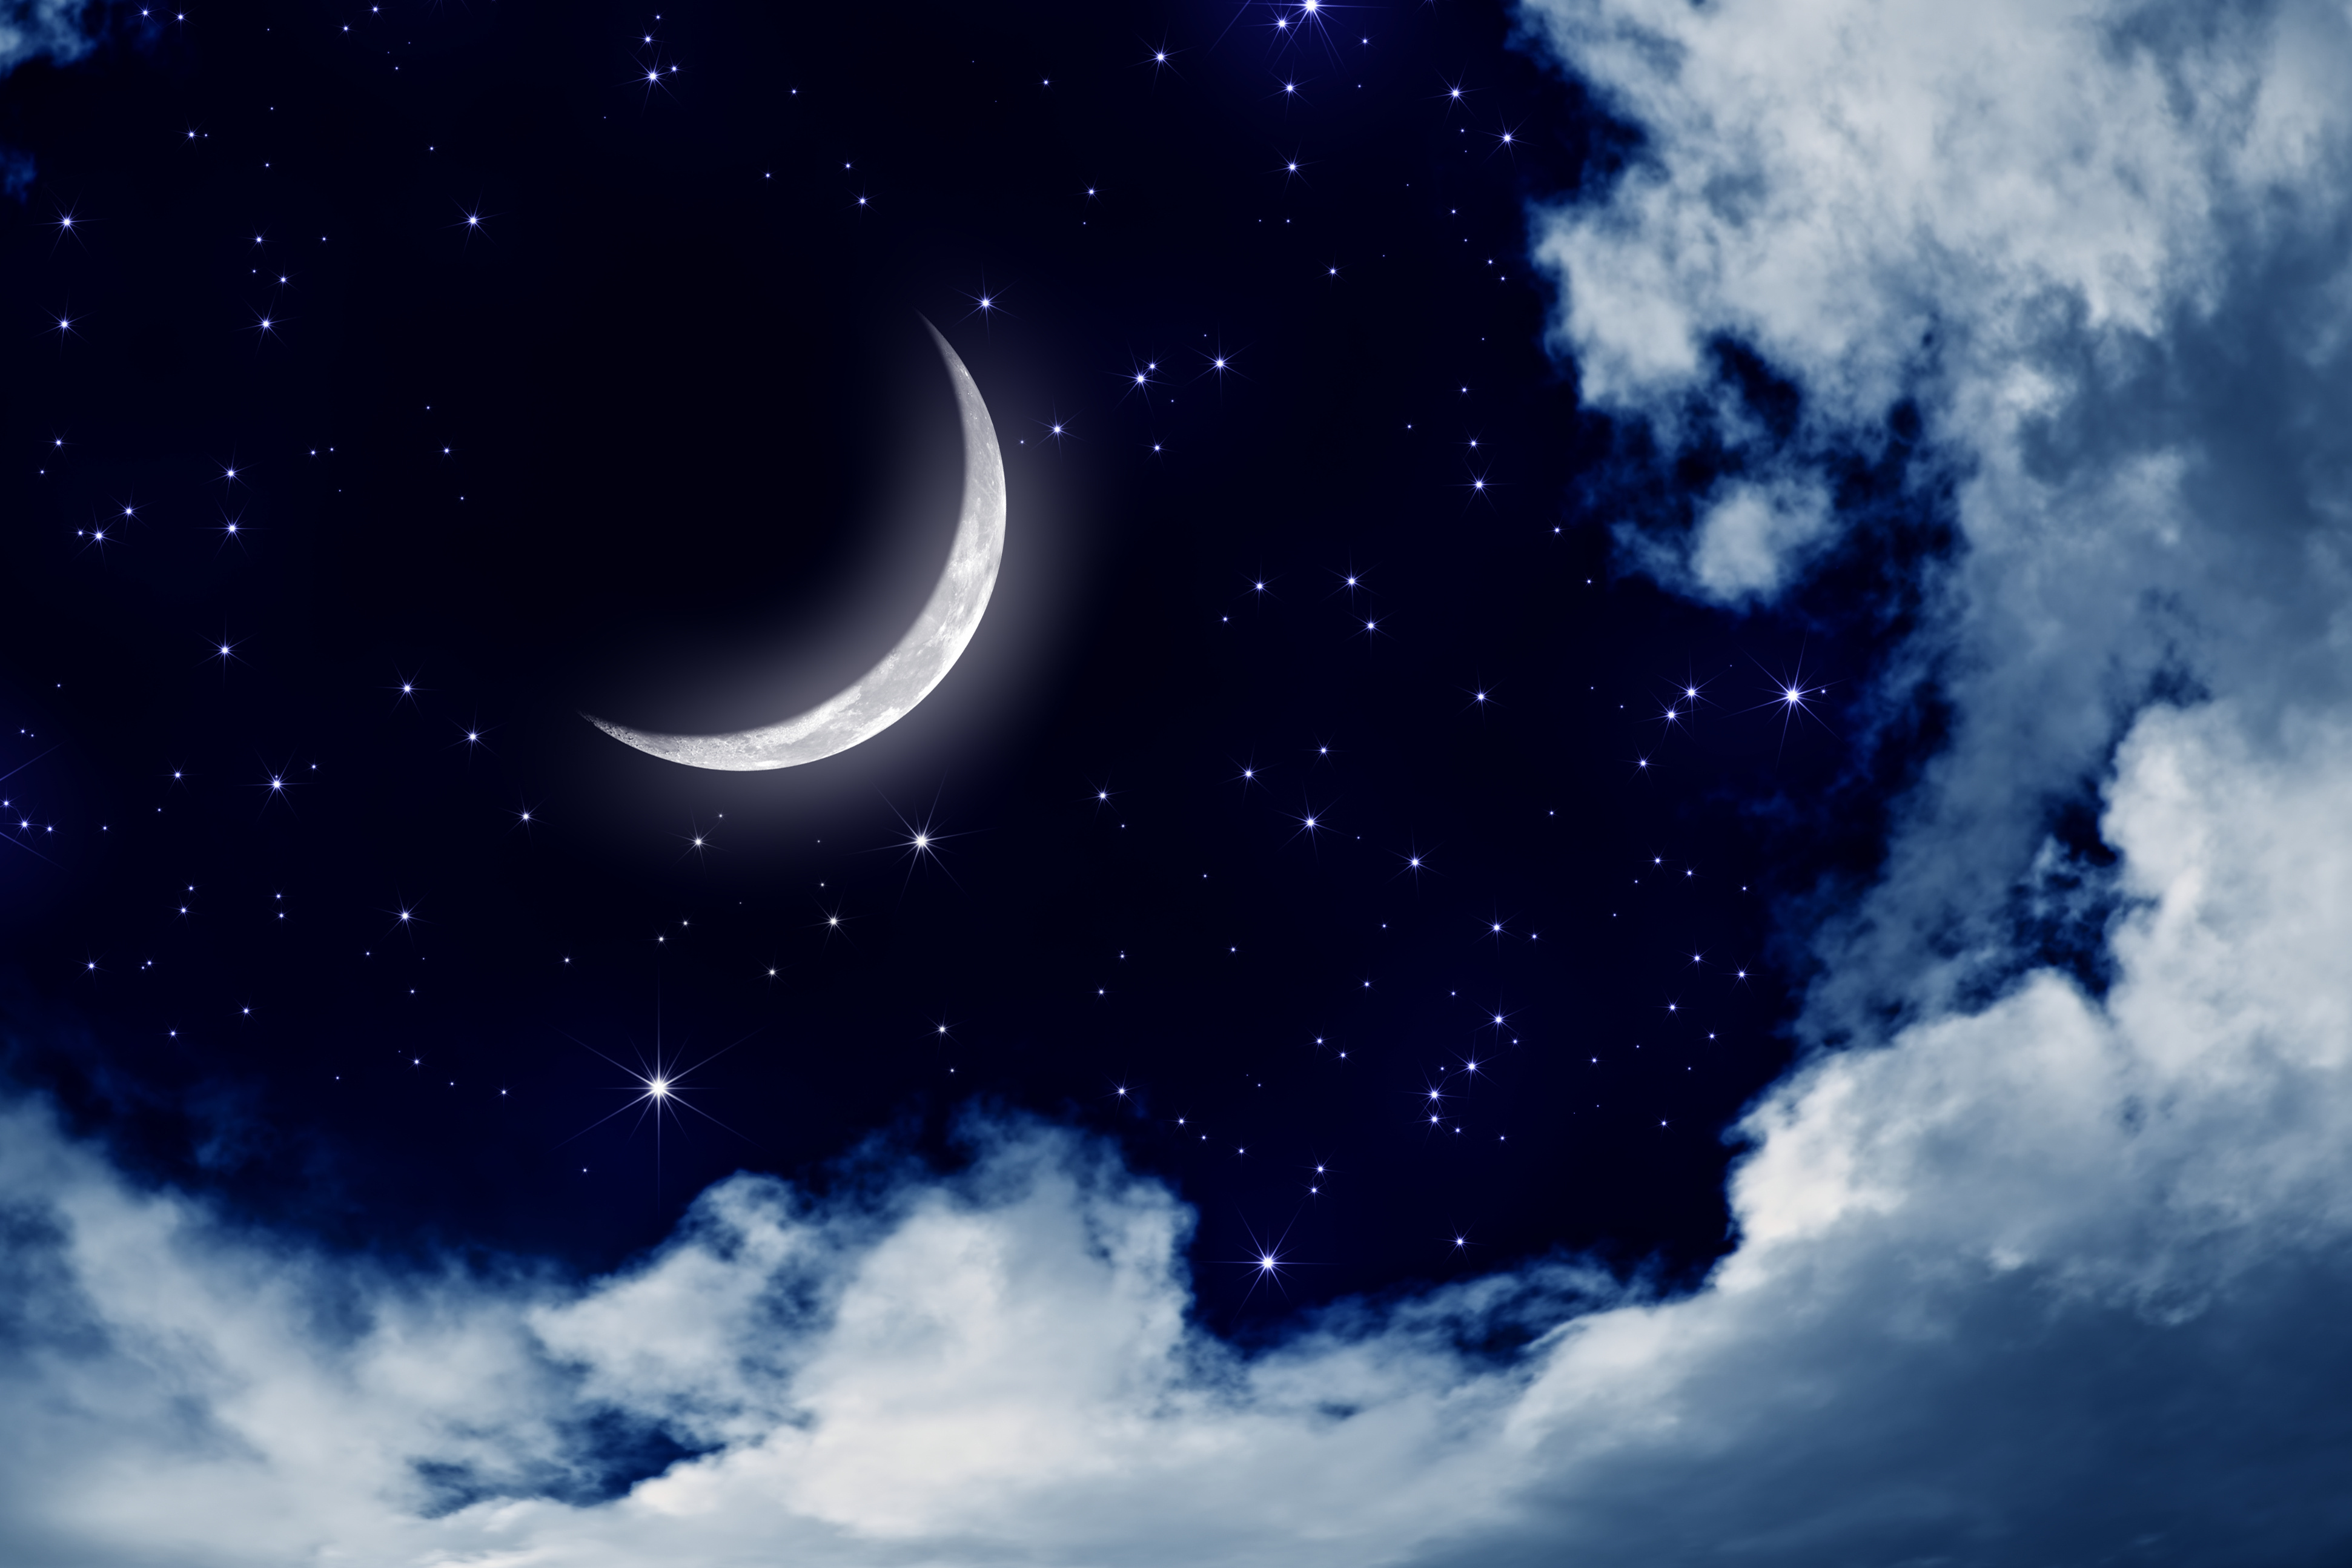 Moon pics. Луна и звезды. Лунное небо. Ночь Луна звезды. Звездное небо с луной.